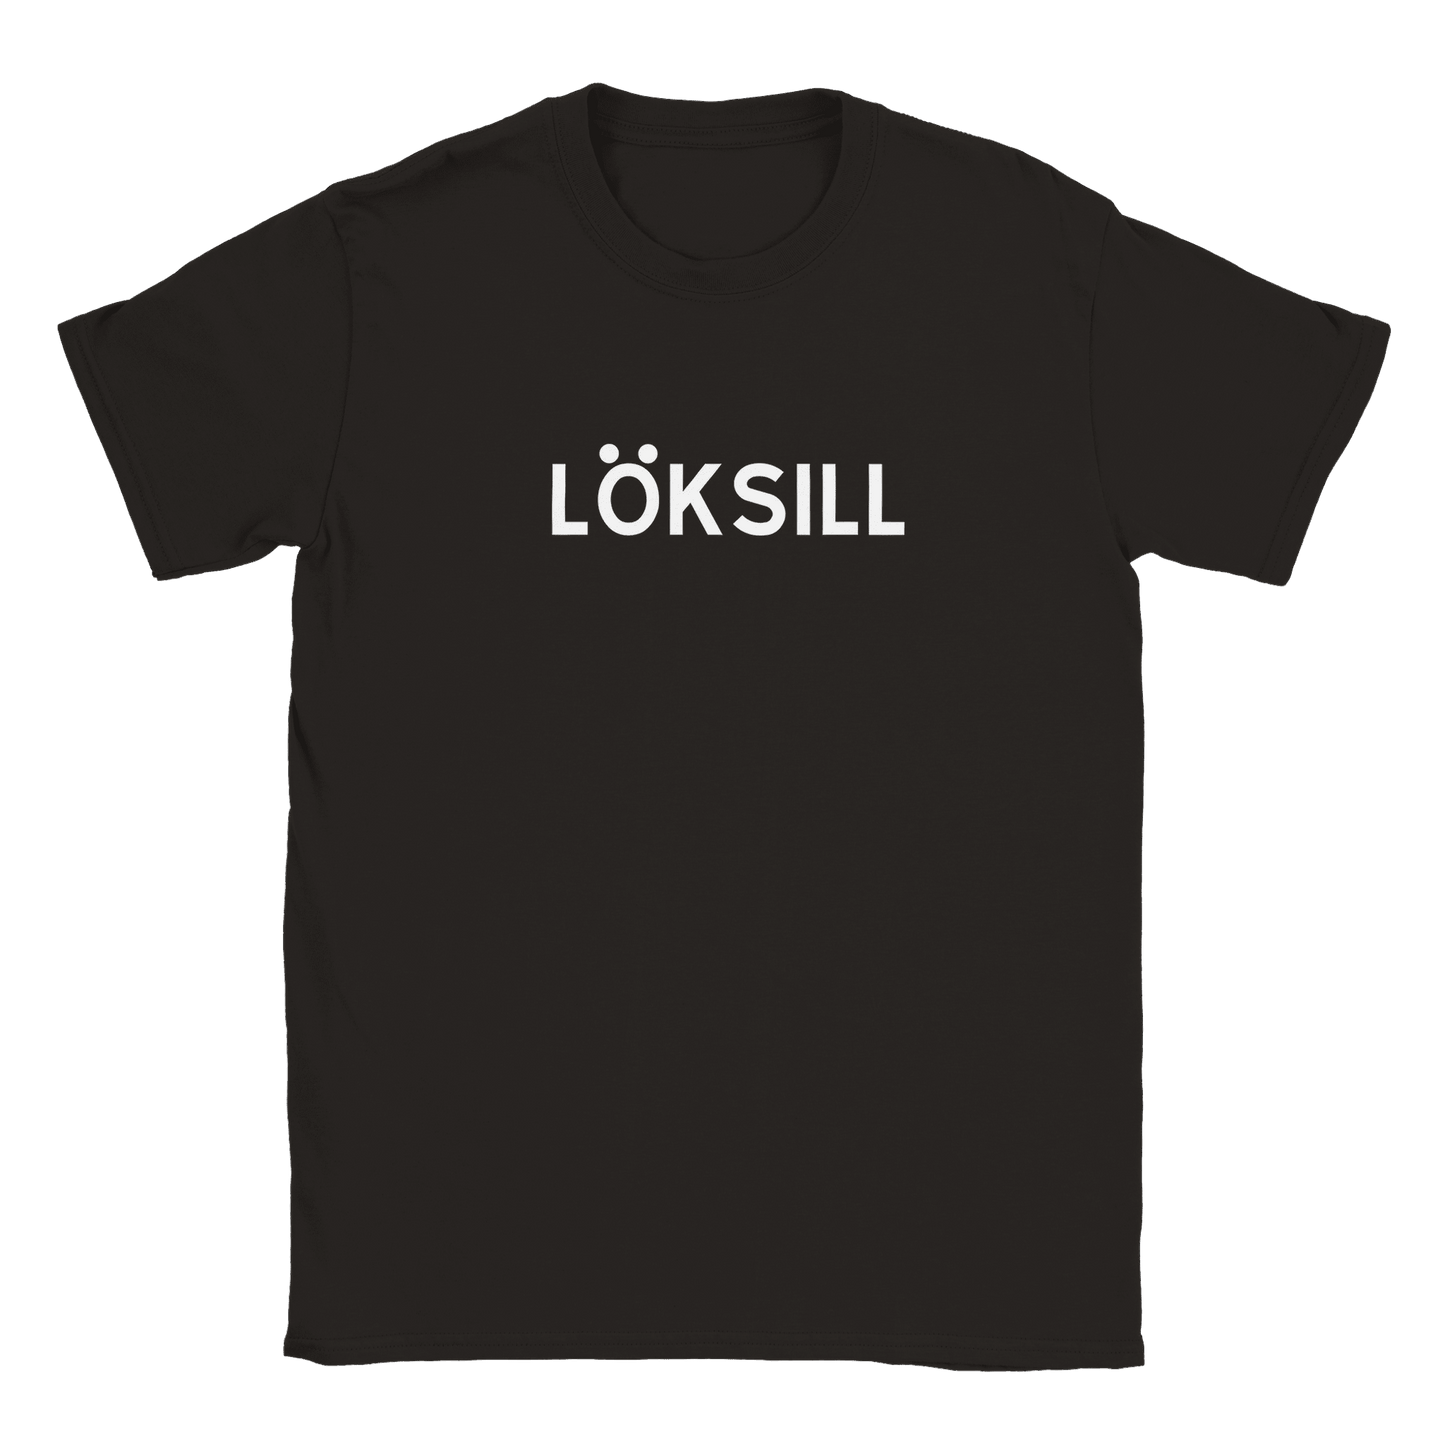 Löksill - T-shirt Svart